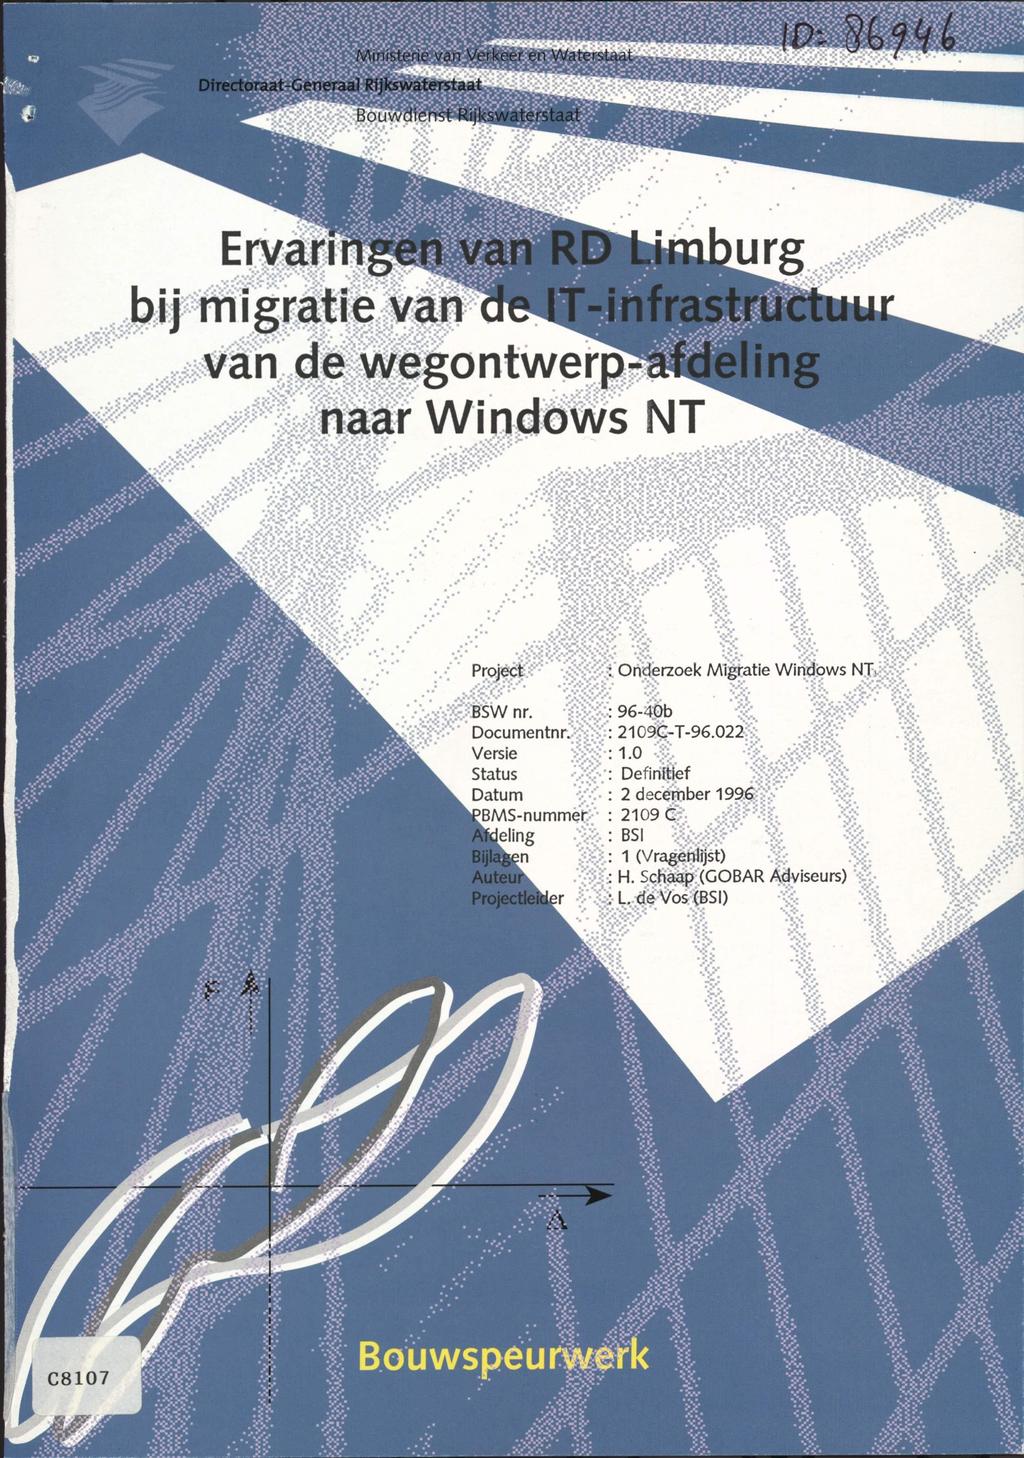 ij mieripe van de IT-infrastructuur 0: naar Windows NT ct : Onderzoek Migratie Windows NT, 1 -sy-'k; nr. : 96-40b '% : > a<ydocumentnri??:;:;: 2109C-T-96.022 Versie 1.